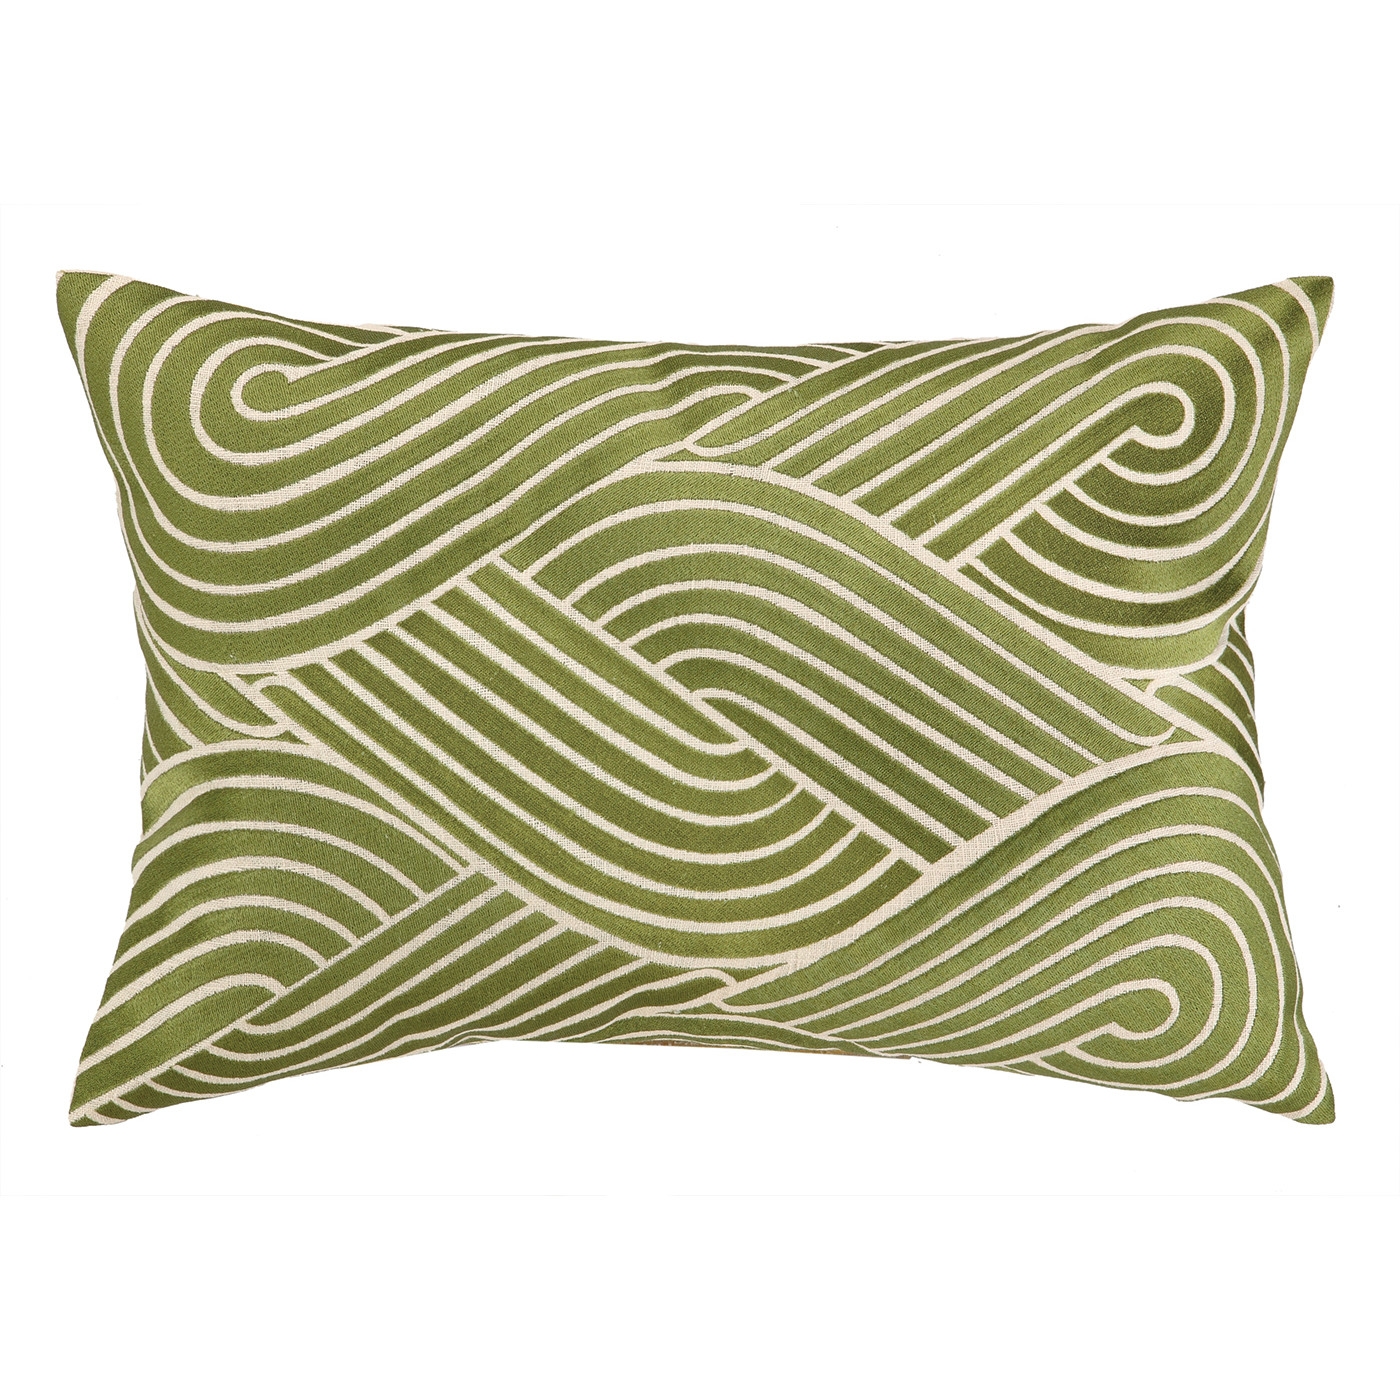 Osaka Waves Embroidered Decorative Linen Lumbar Pillowby D.L. Rhein - Image 0